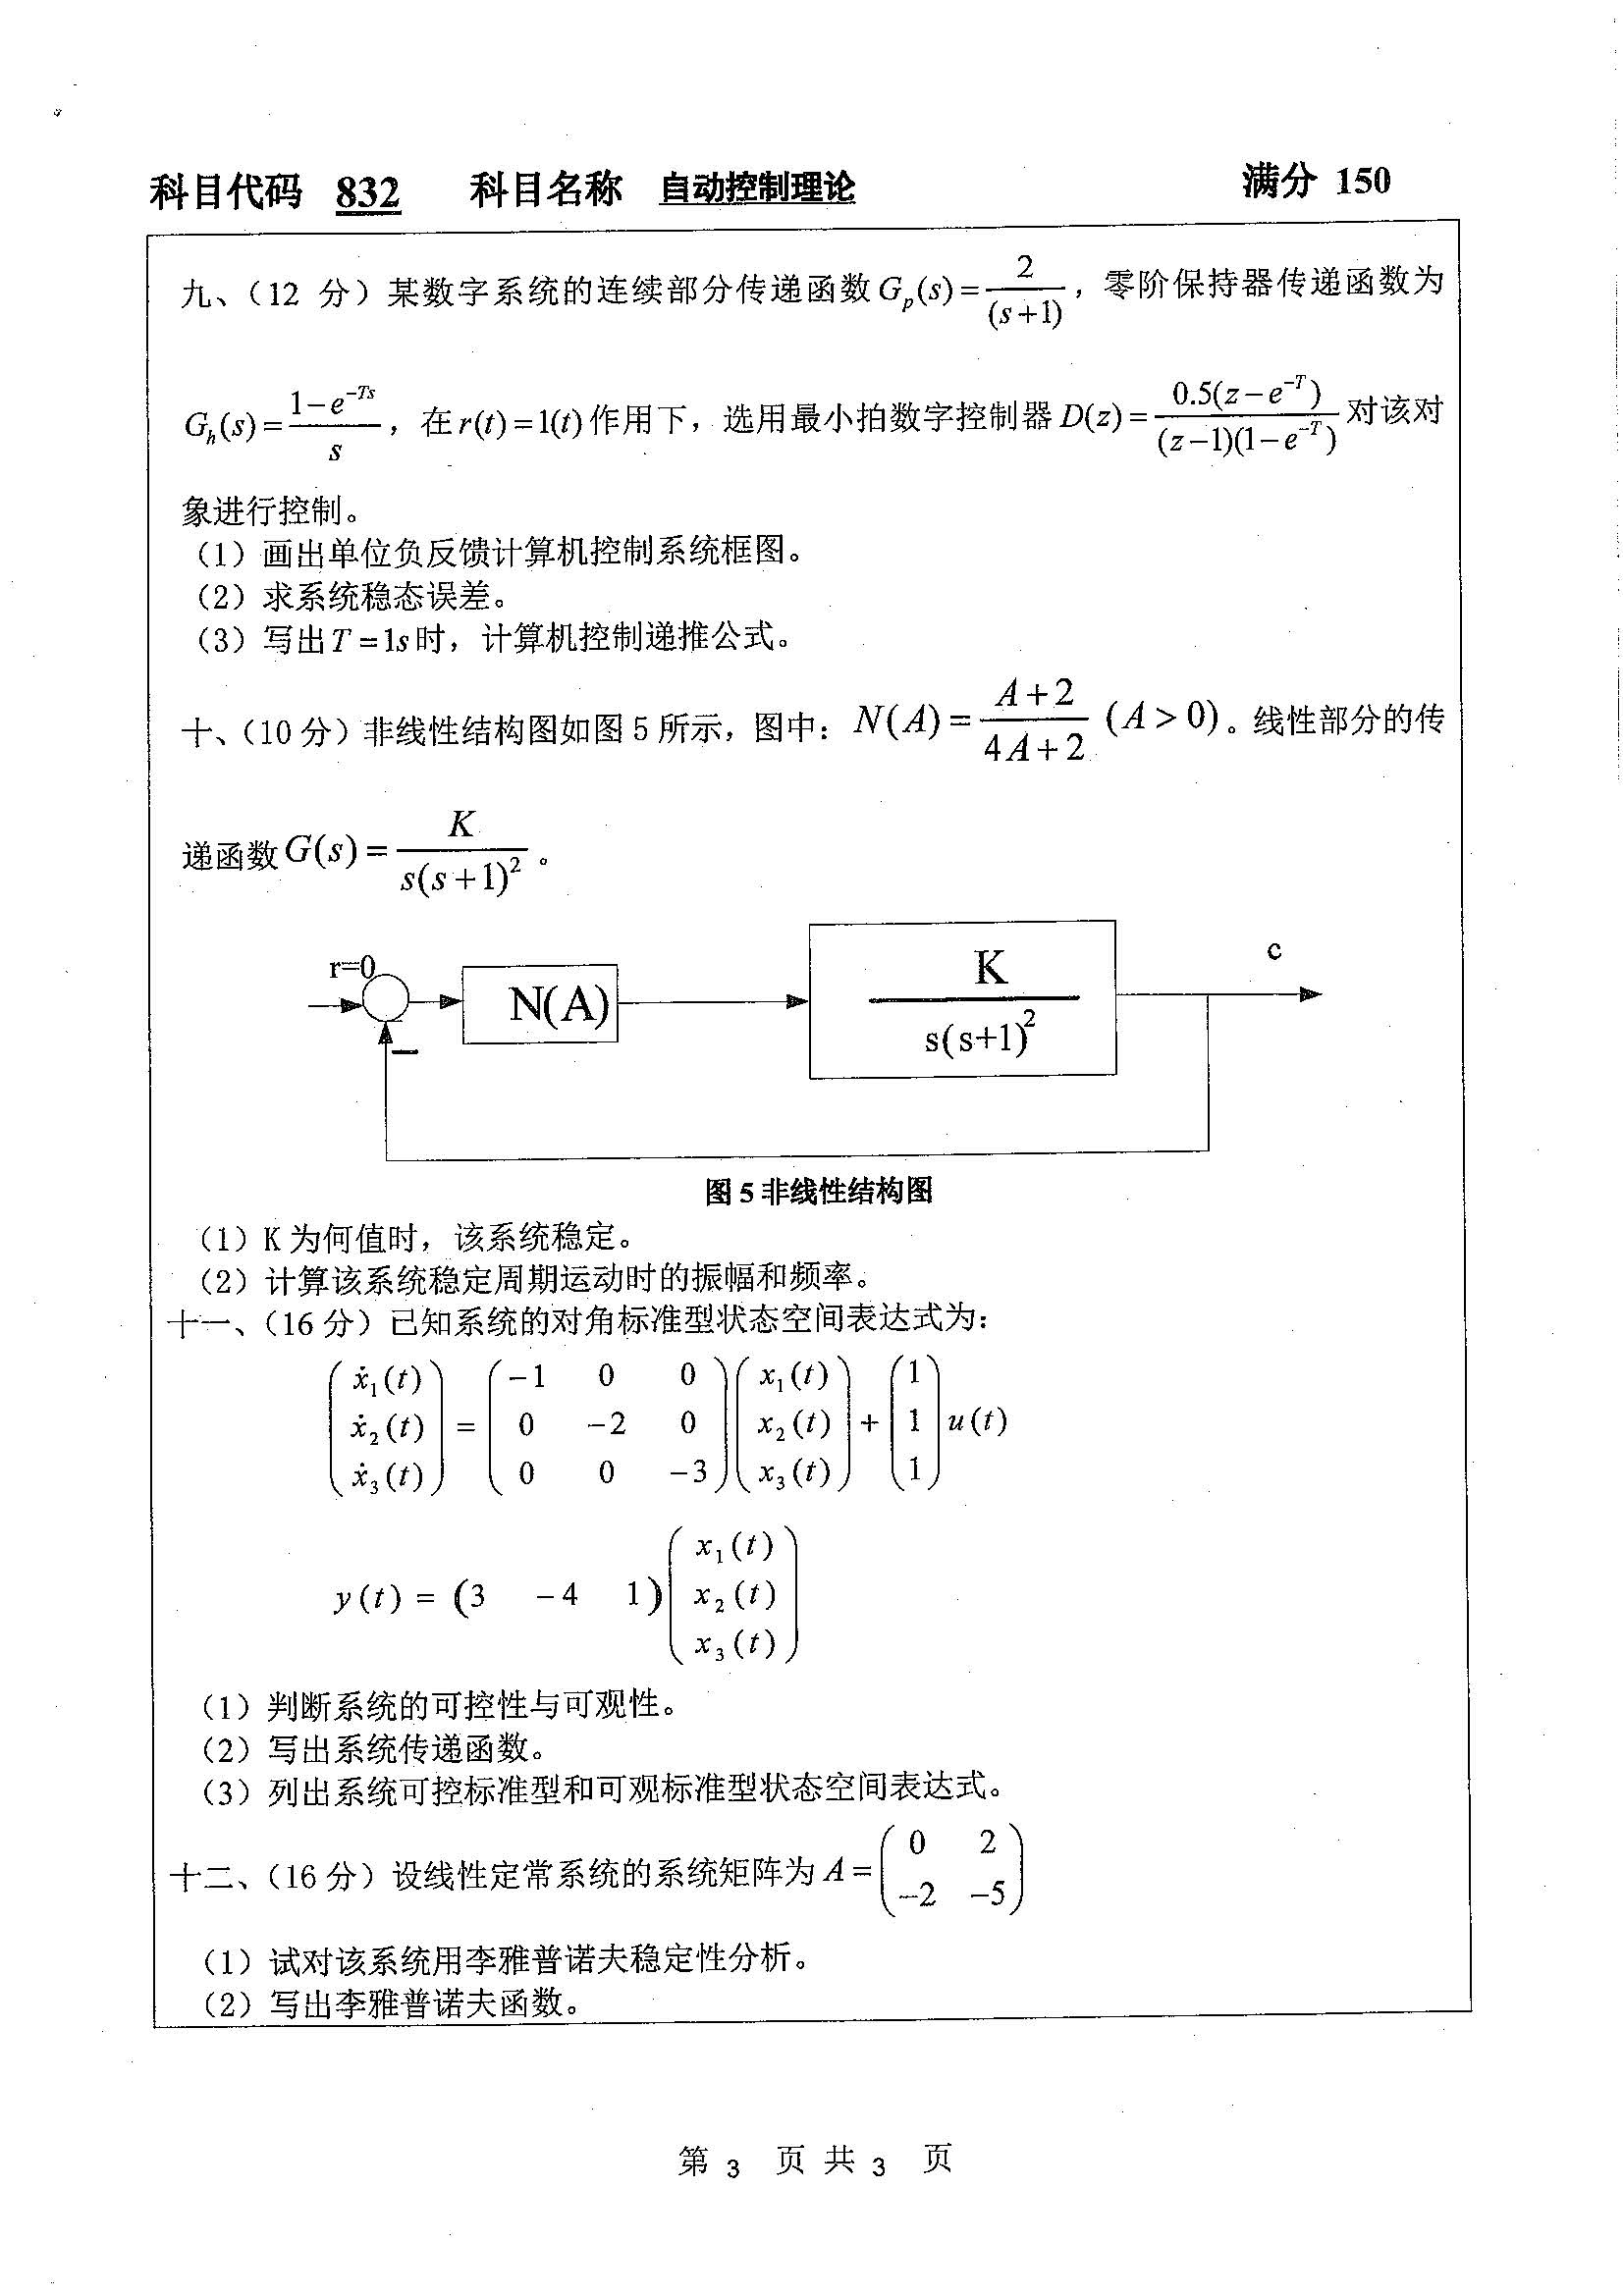 832-自动控制理论2020年考研初试试卷真题（扬州大学）